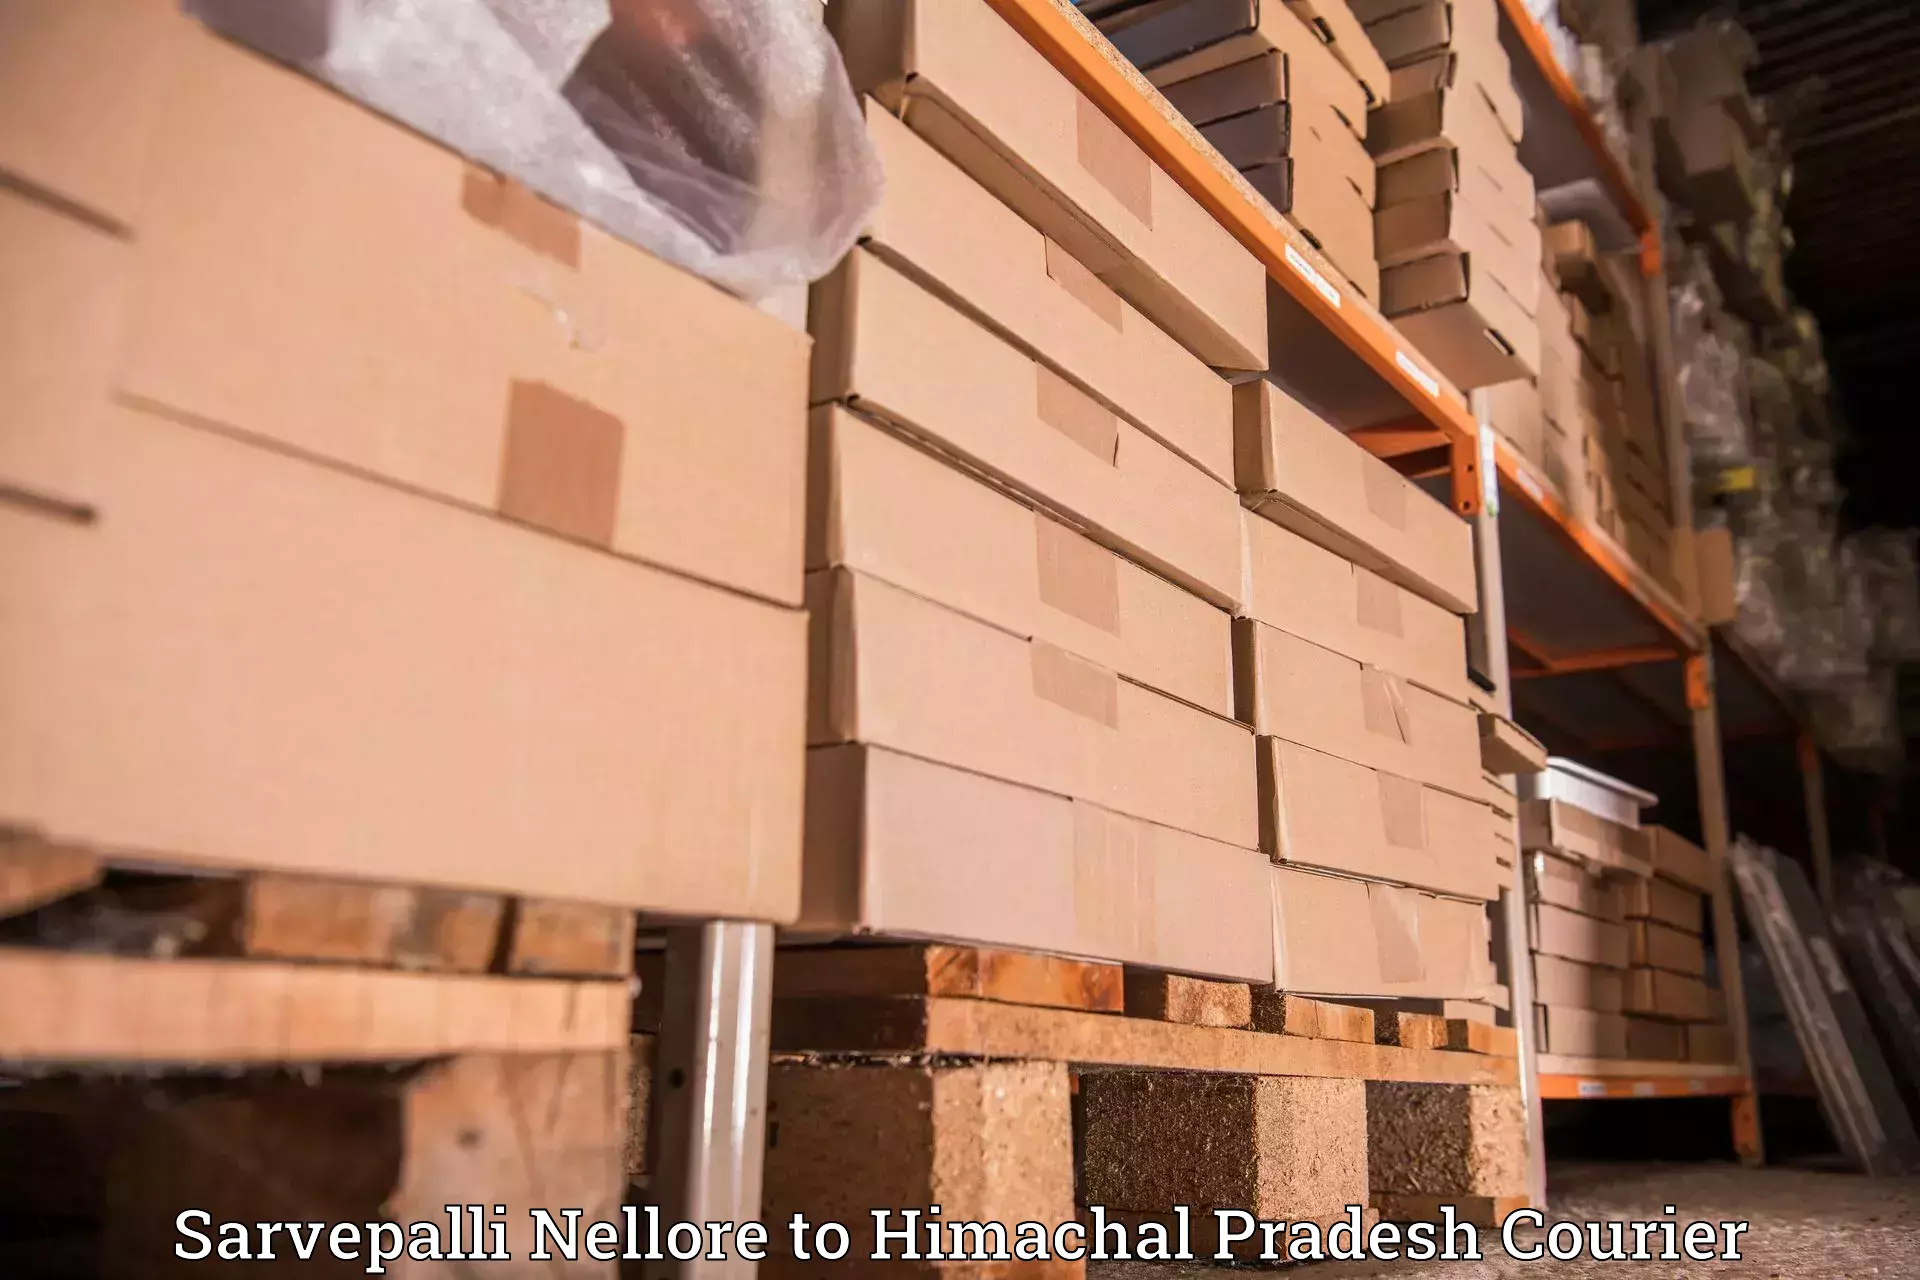 Tailored delivery services Sarvepalli Nellore to Rampur Bushahr